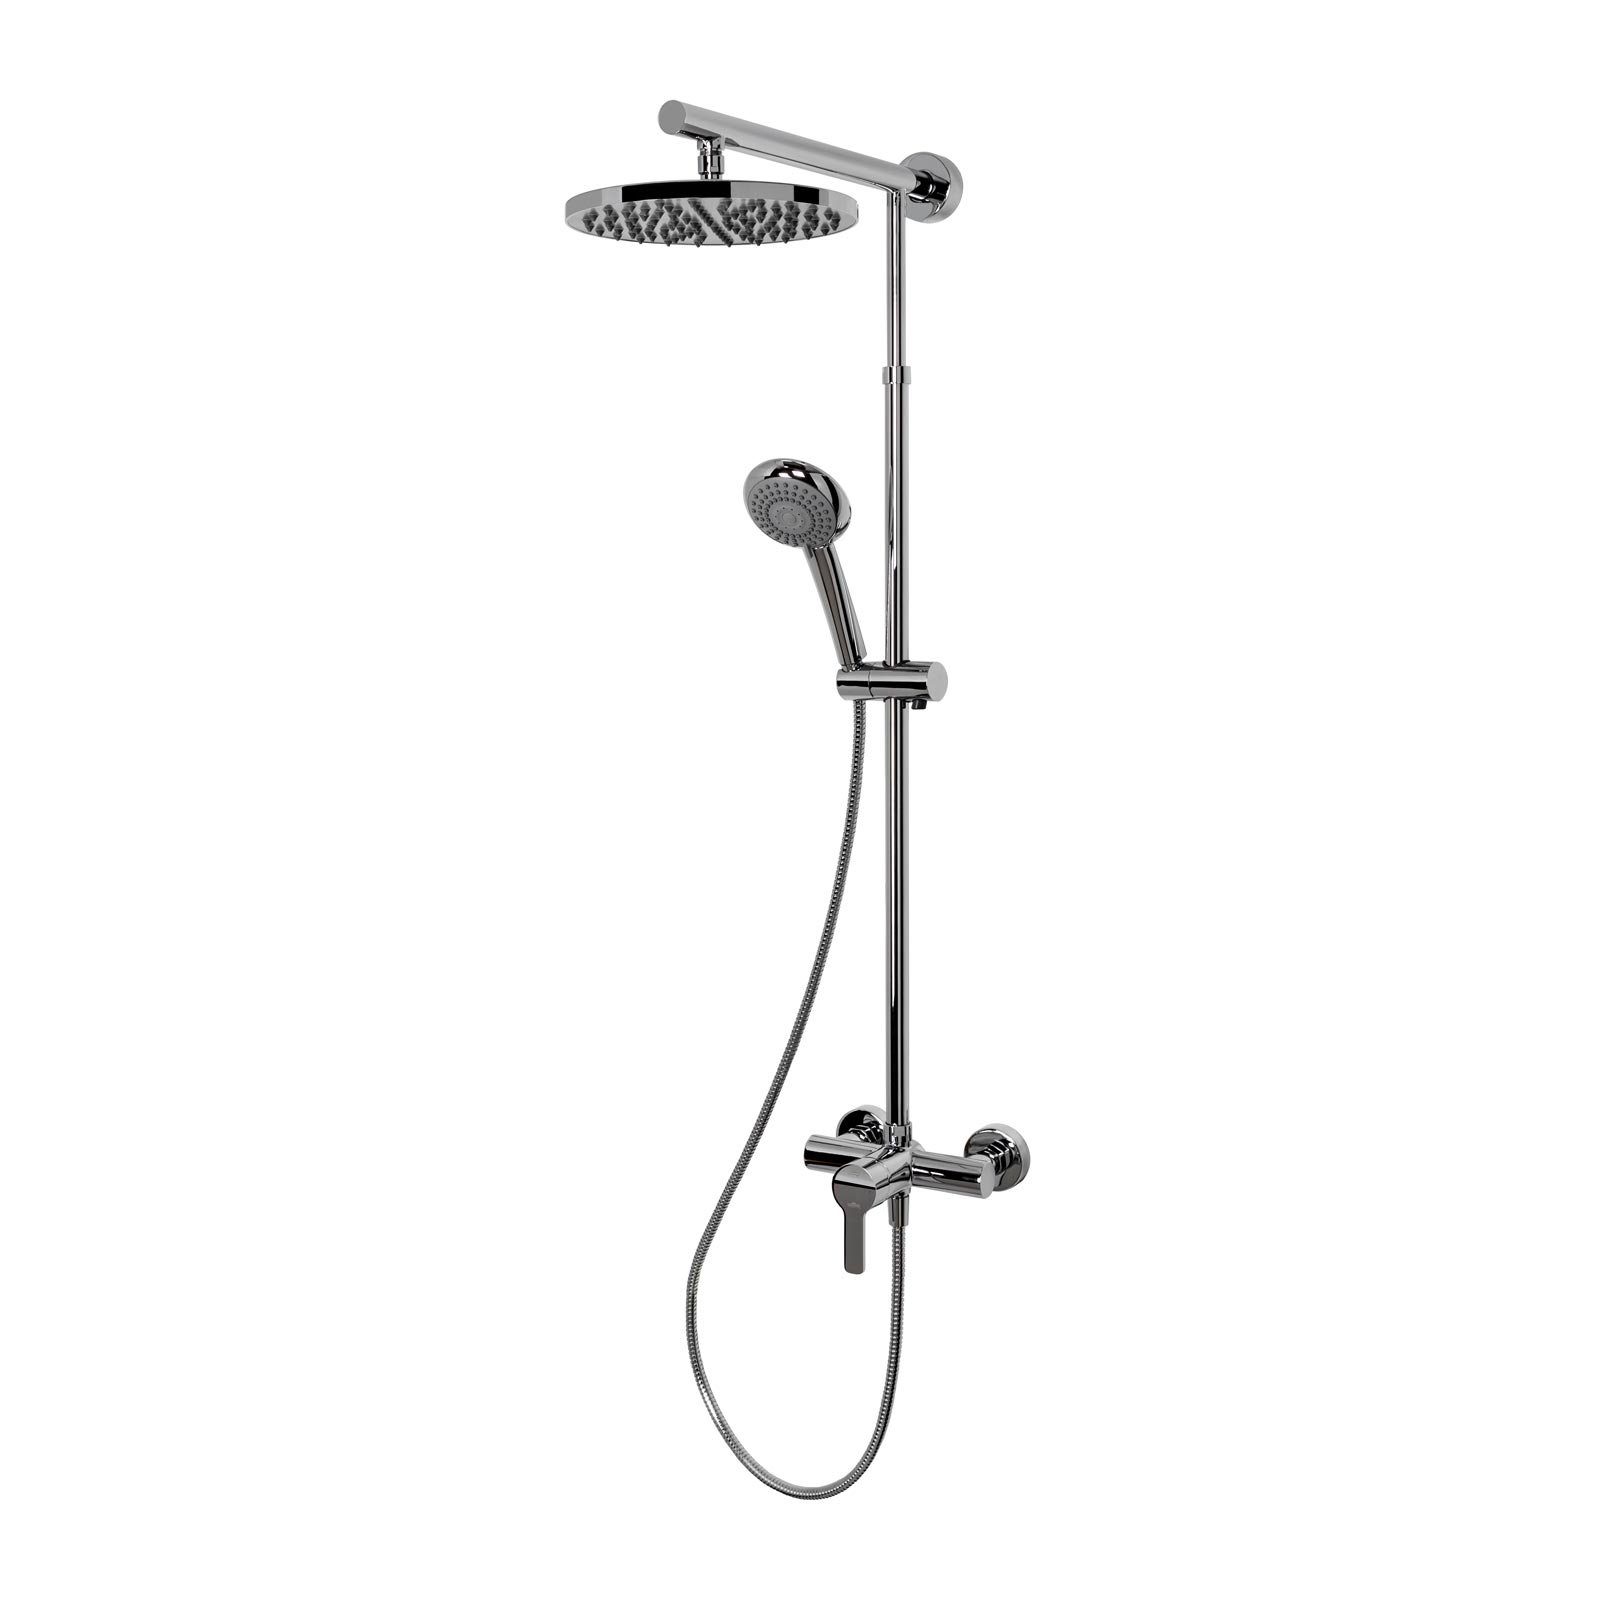 Schulte Duschsystem DuschMaster Rain "Classic" mit Einhebelmischer, rund, Höhe 155.4 cm